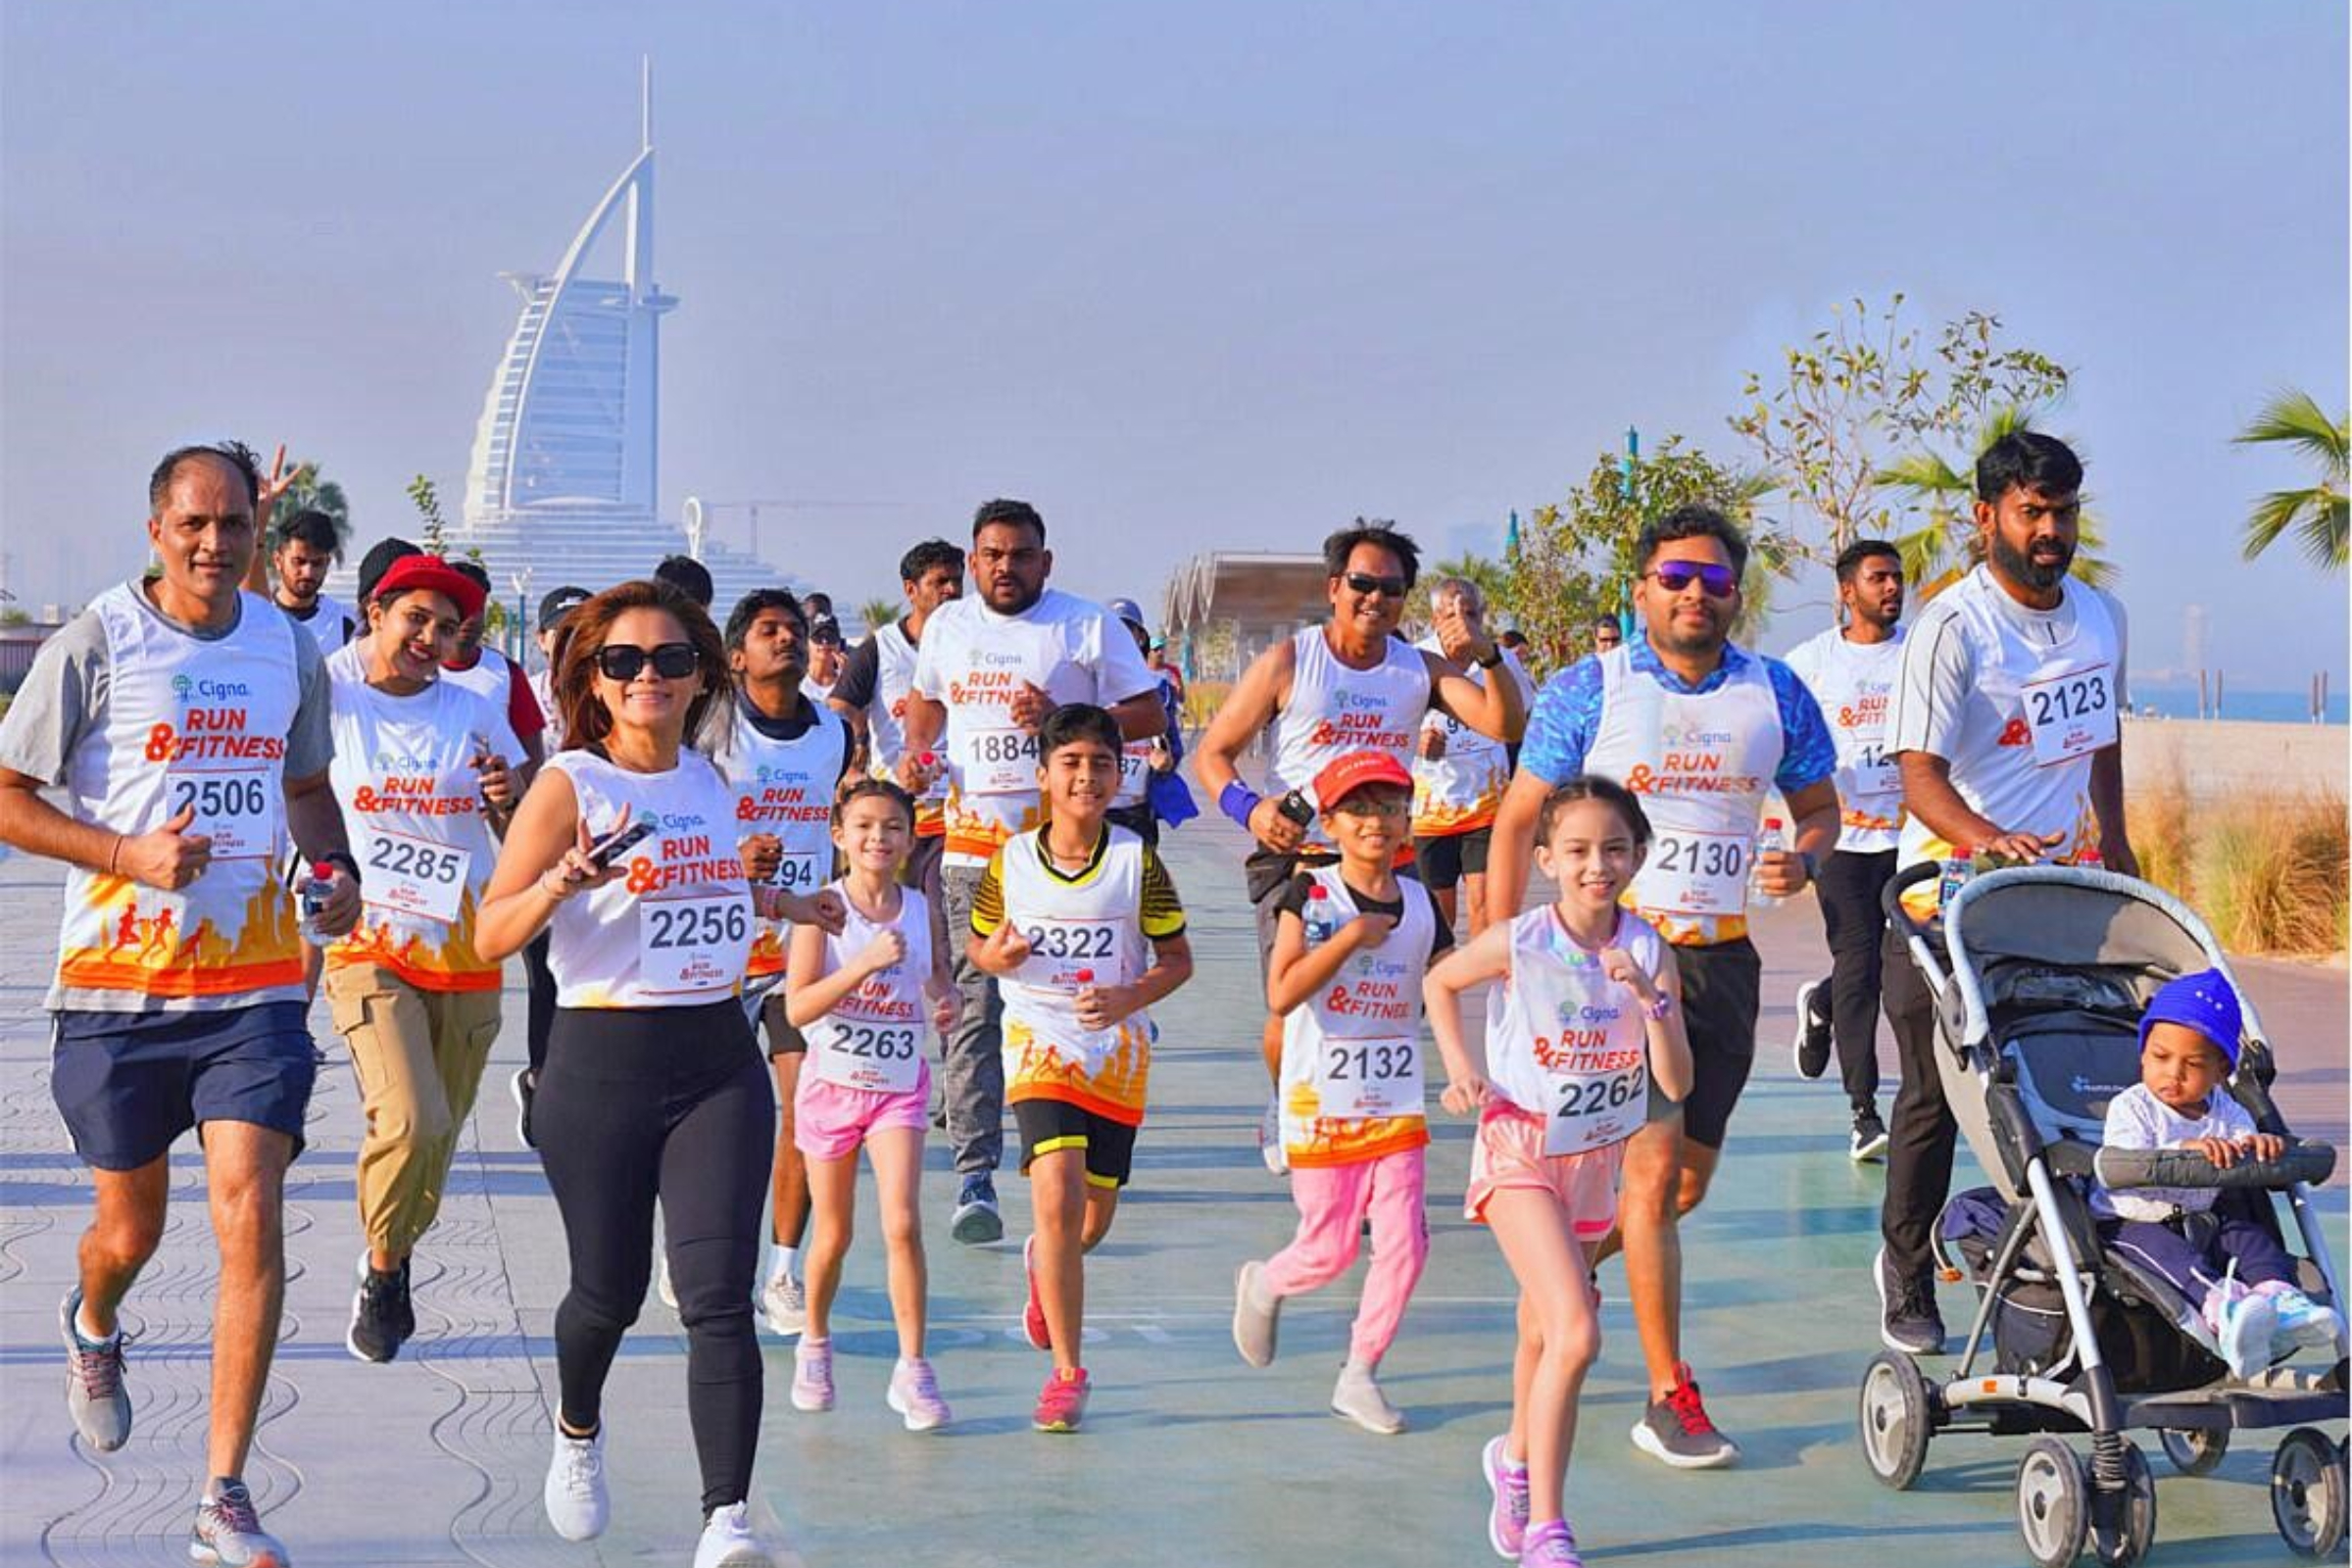 Kite Beach Dubai March 18th Cigna Run Event